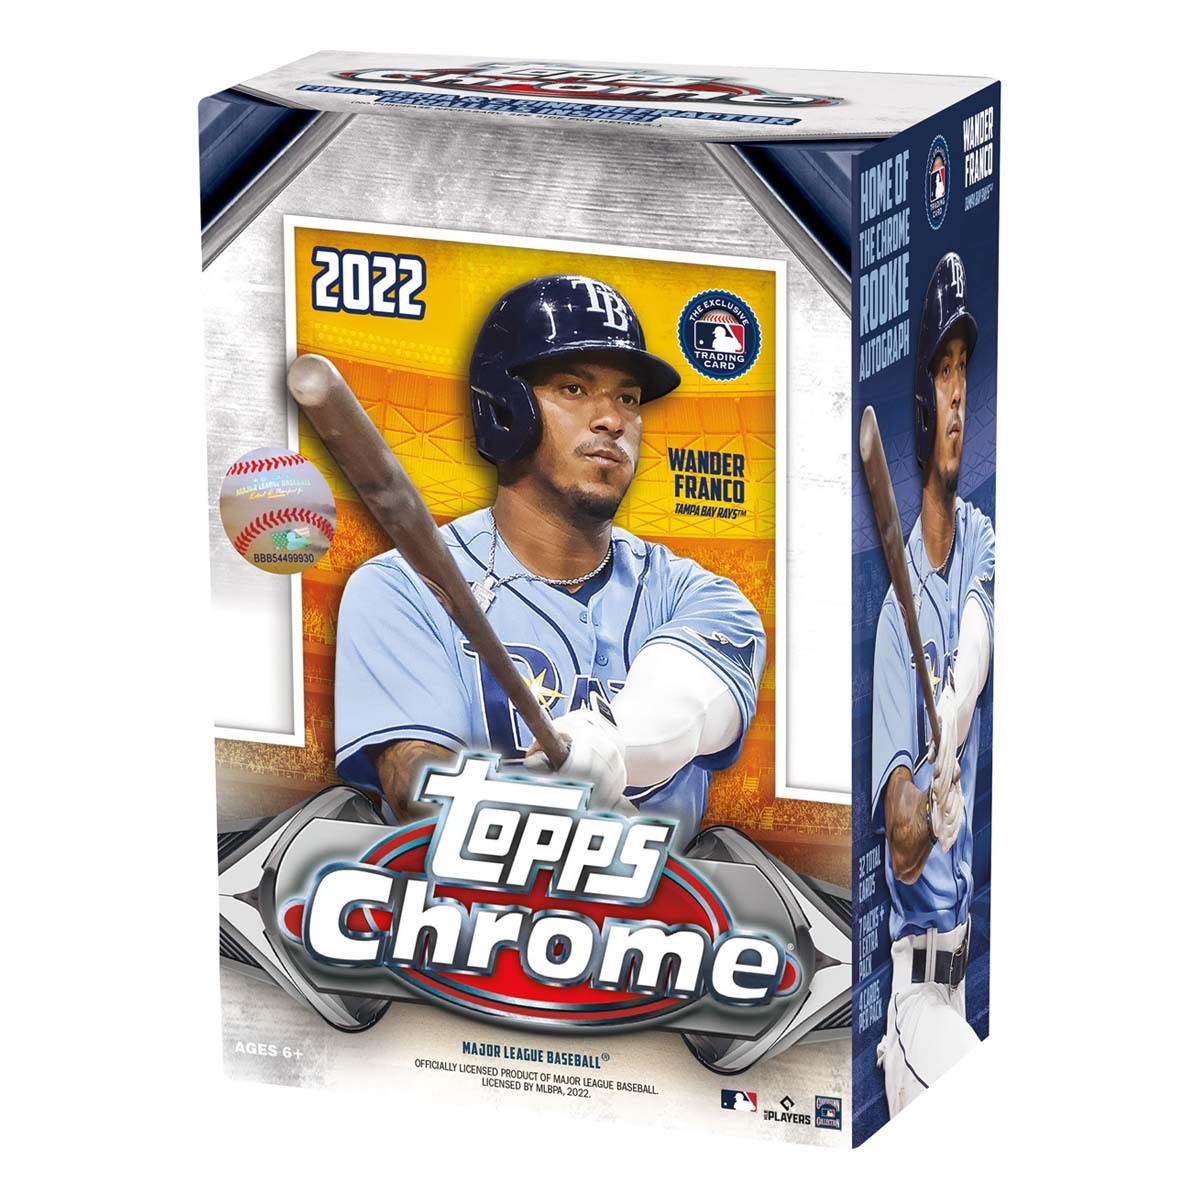 2023 Topps Series 1 Baseball Blaster 40 Box Case